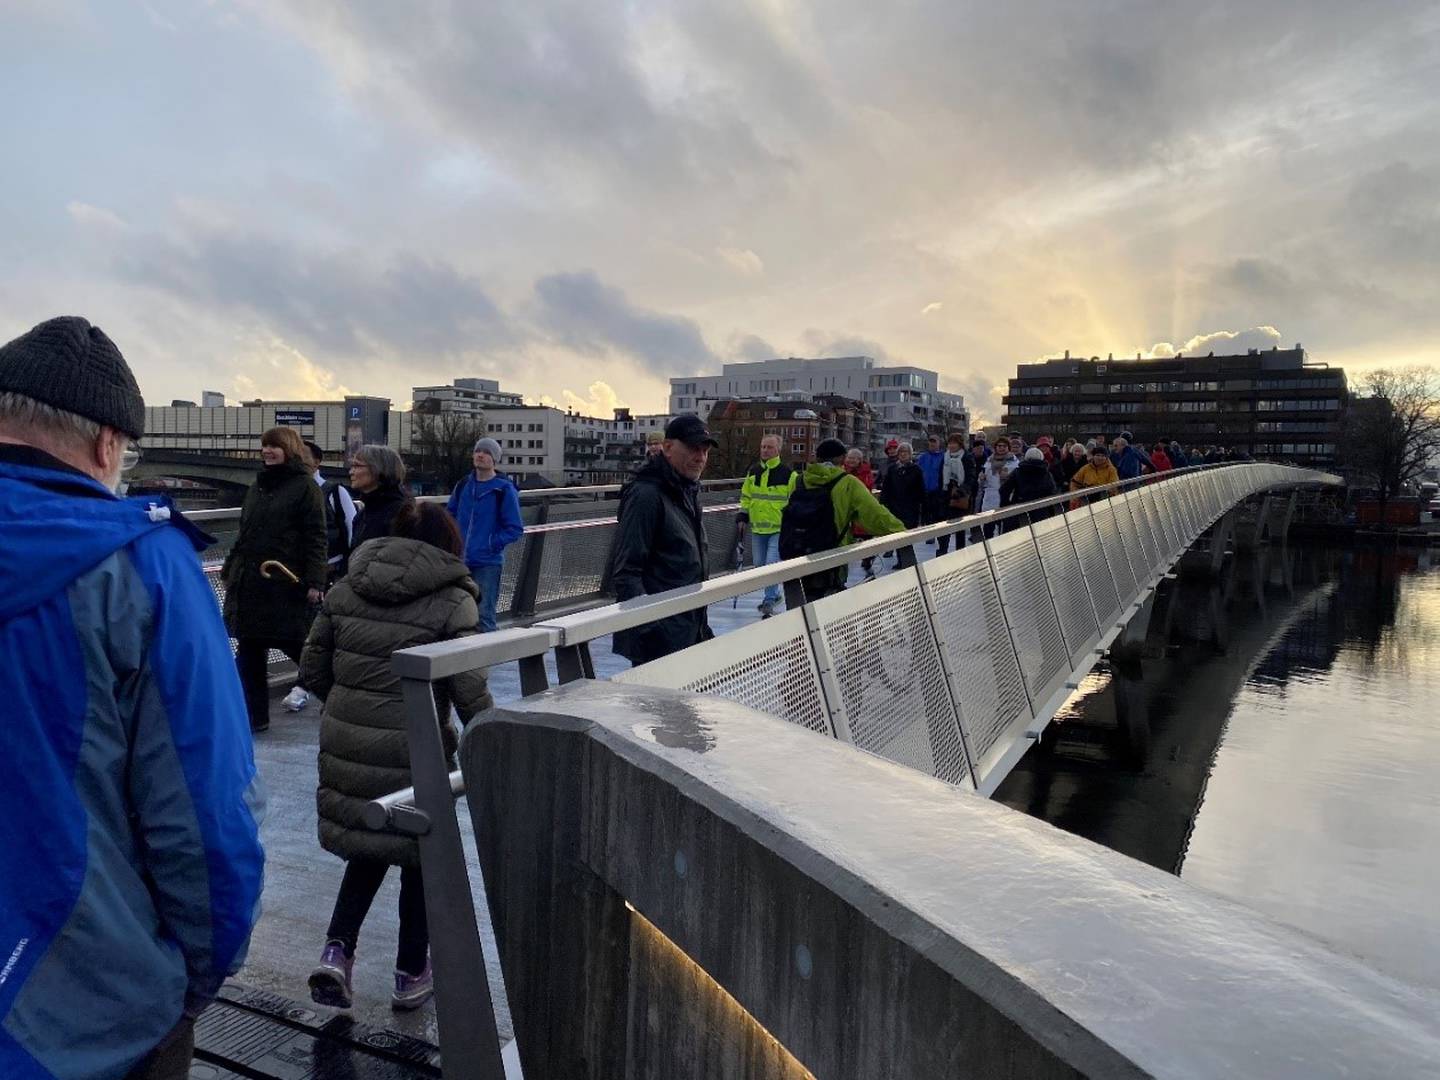 Christian Quart-broa over elven Otra blir mye brukt av både syklister og fotgjengere, ifølge Kristiansand kommune.